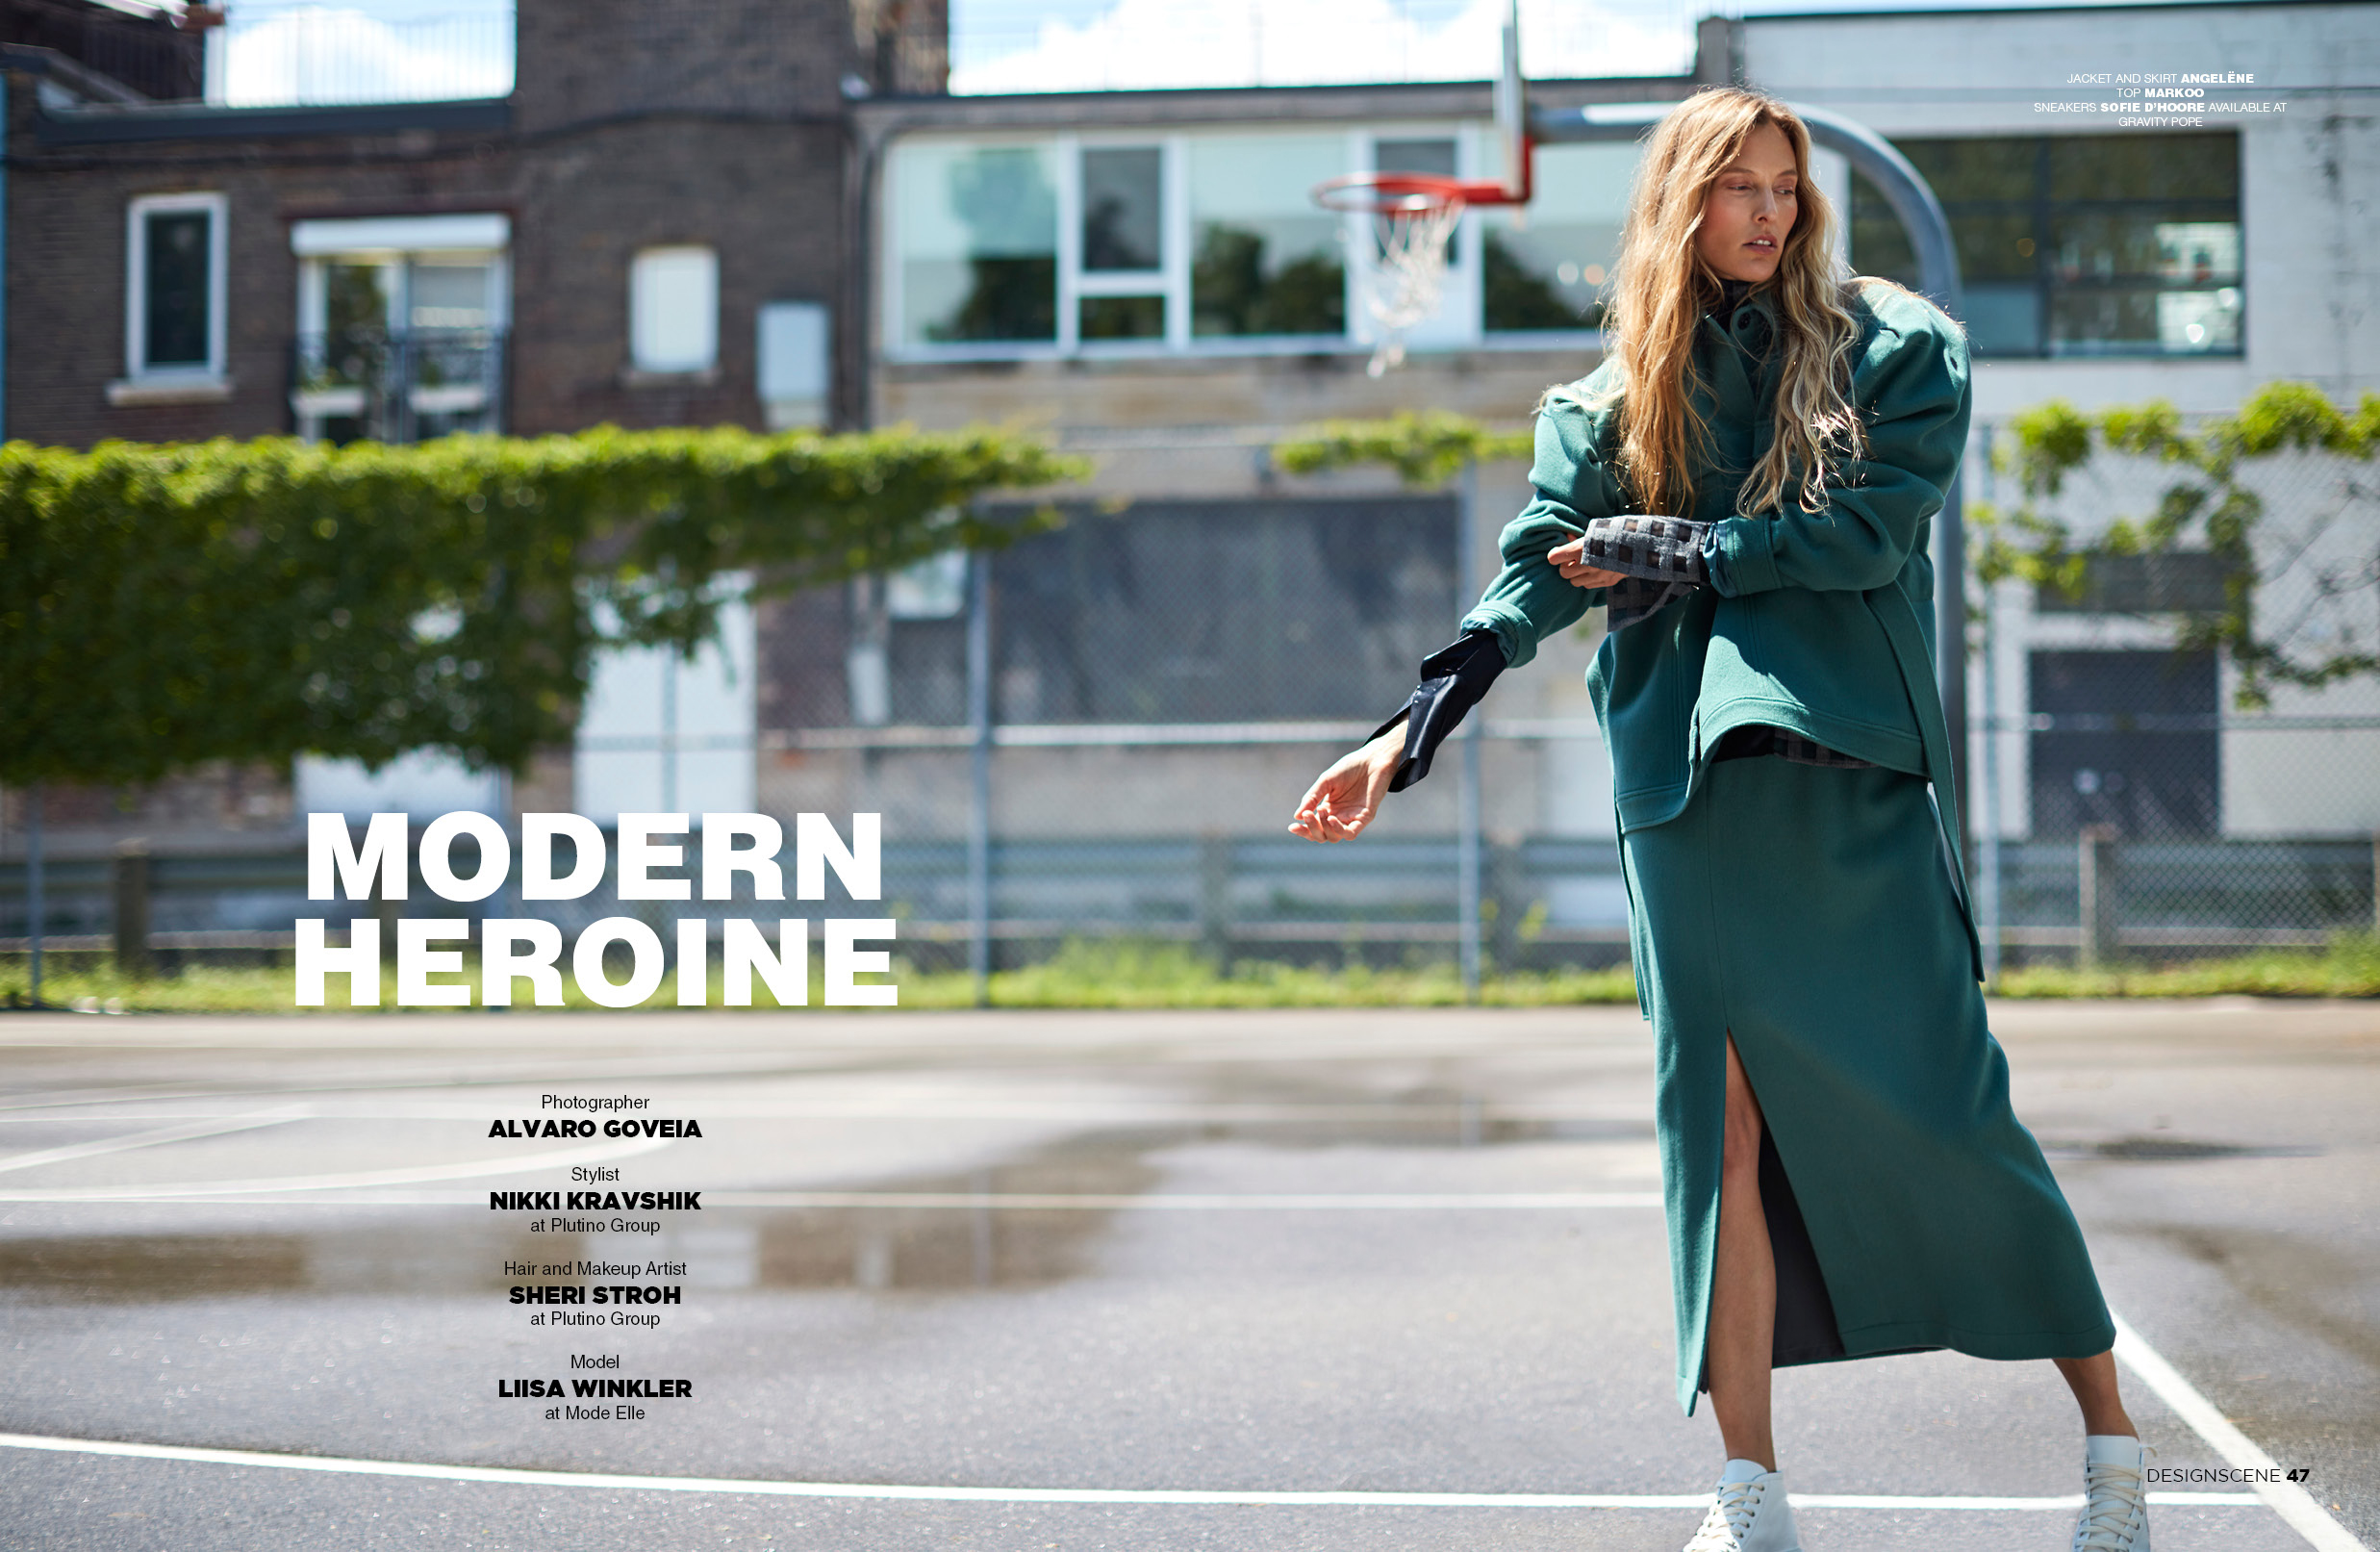 Supermodel LIISA WINKLER for DESIGN SCENE Issue 017 Cover Story